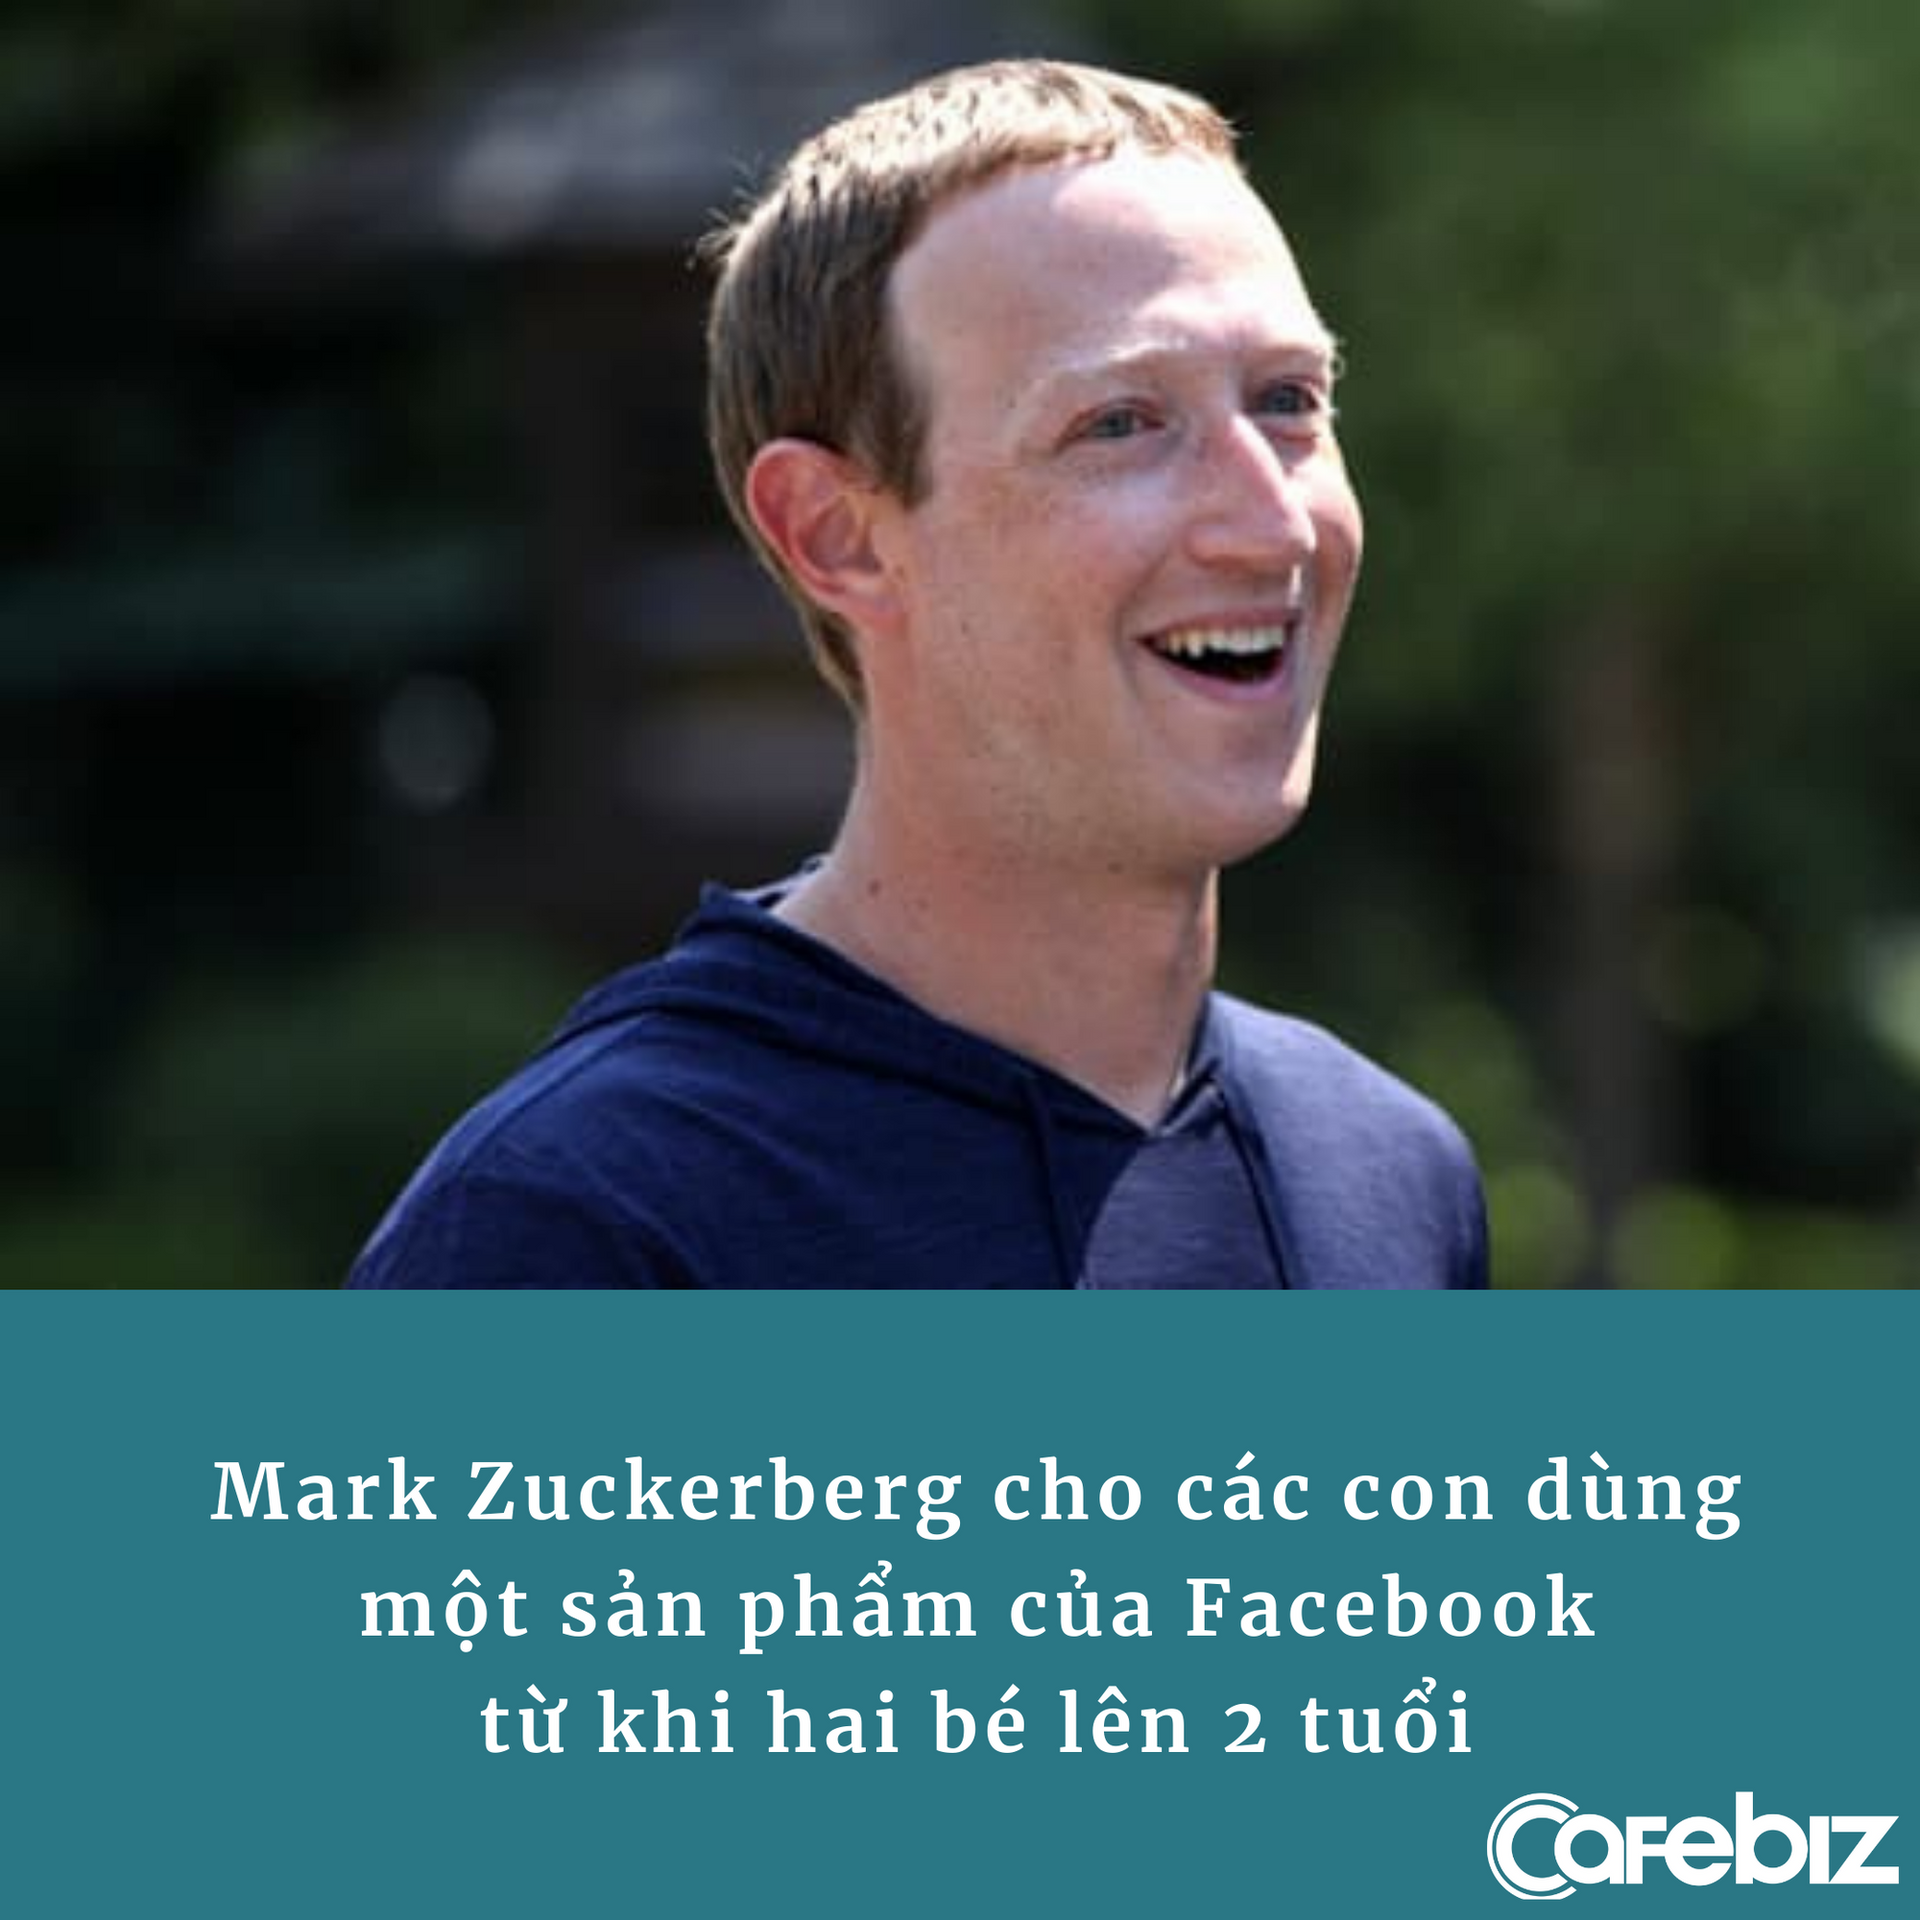 Lý do Mark Zuckerberg cho các con dùng nền tảng của Facebook từ 2 tuổi, khẳng định ‘điều đó tốt cho sức khỏe của chúng’ - Ảnh 1.